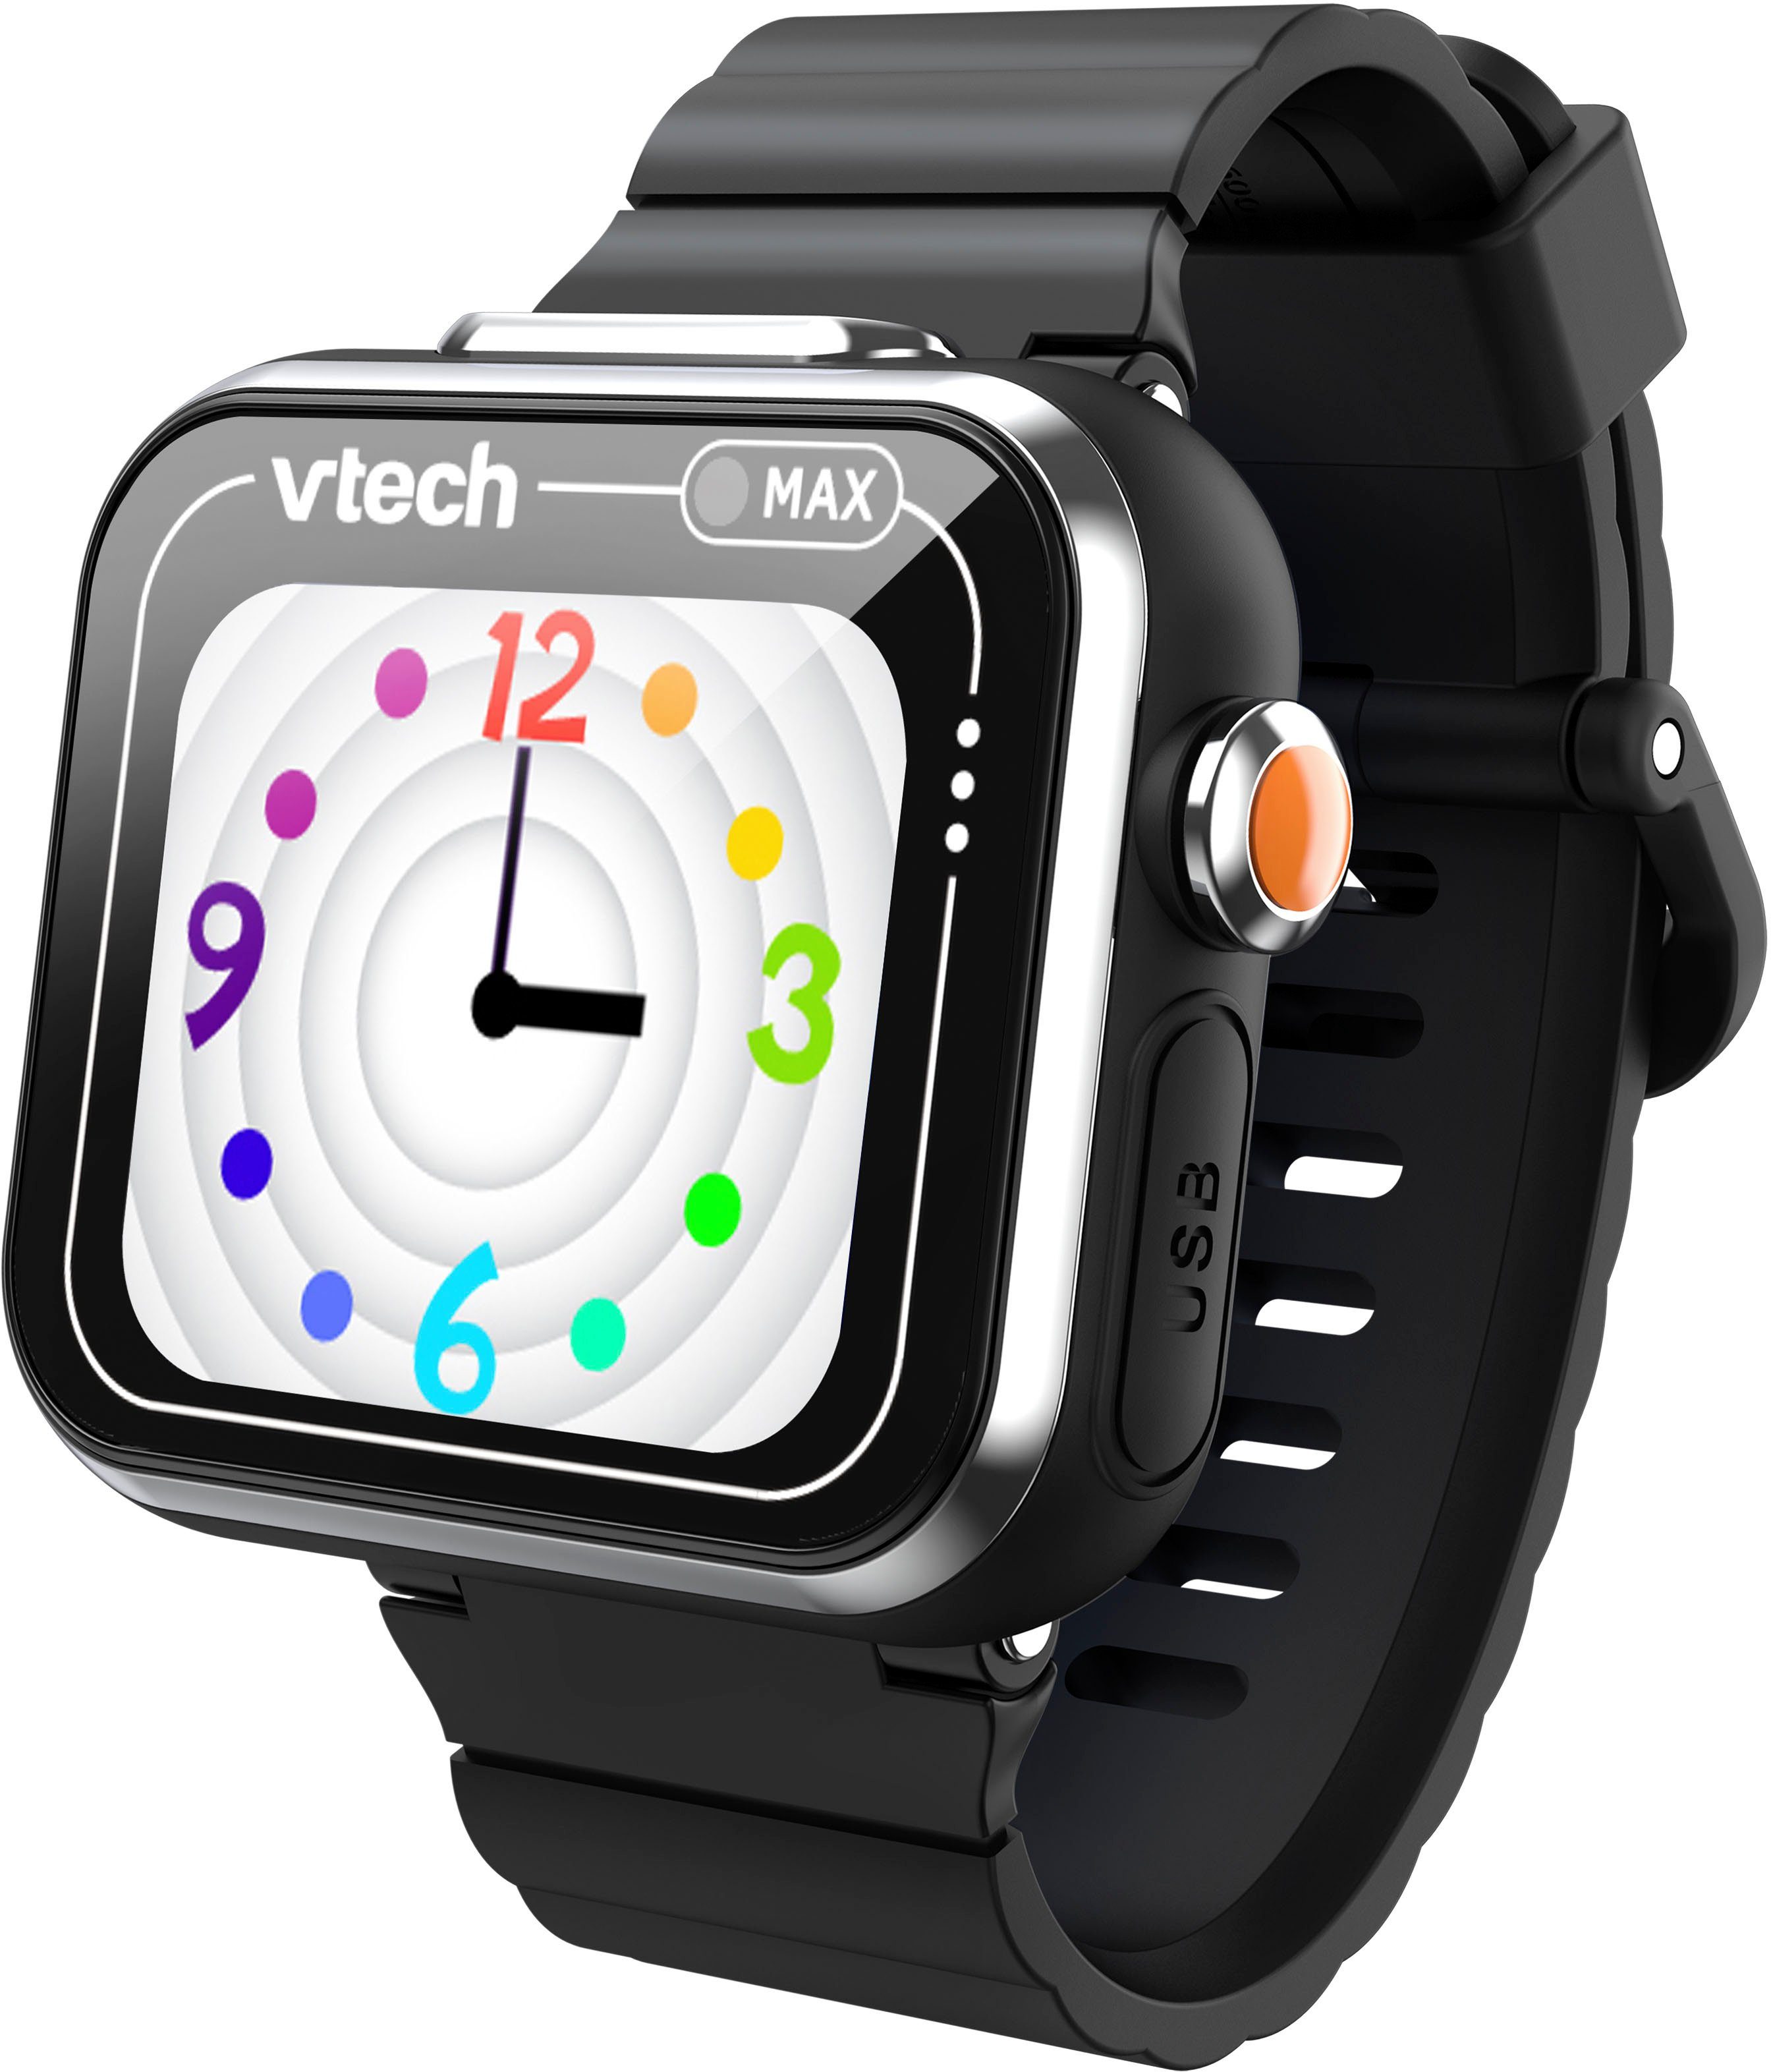 Vtech® Lernspielzeug KidiZoom Smart Watch schwarz MAX